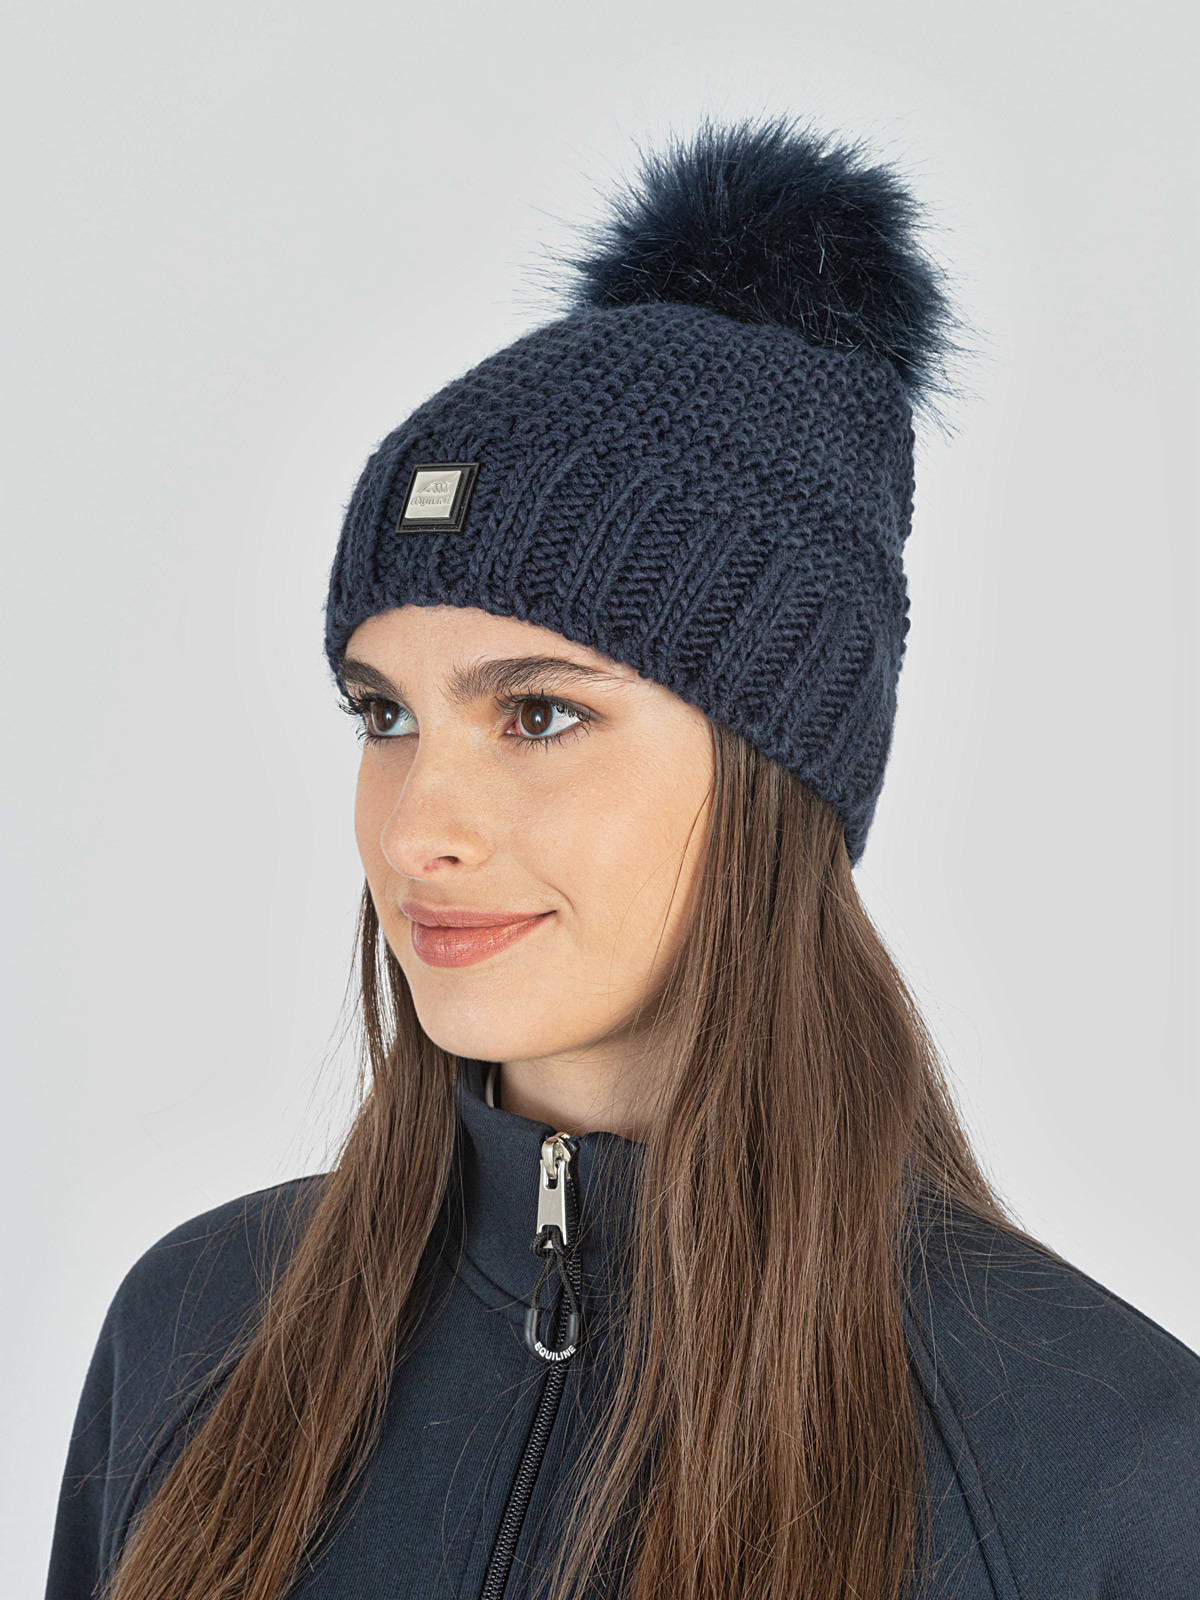 Breyer Blue Pom-Pom Winter Hat